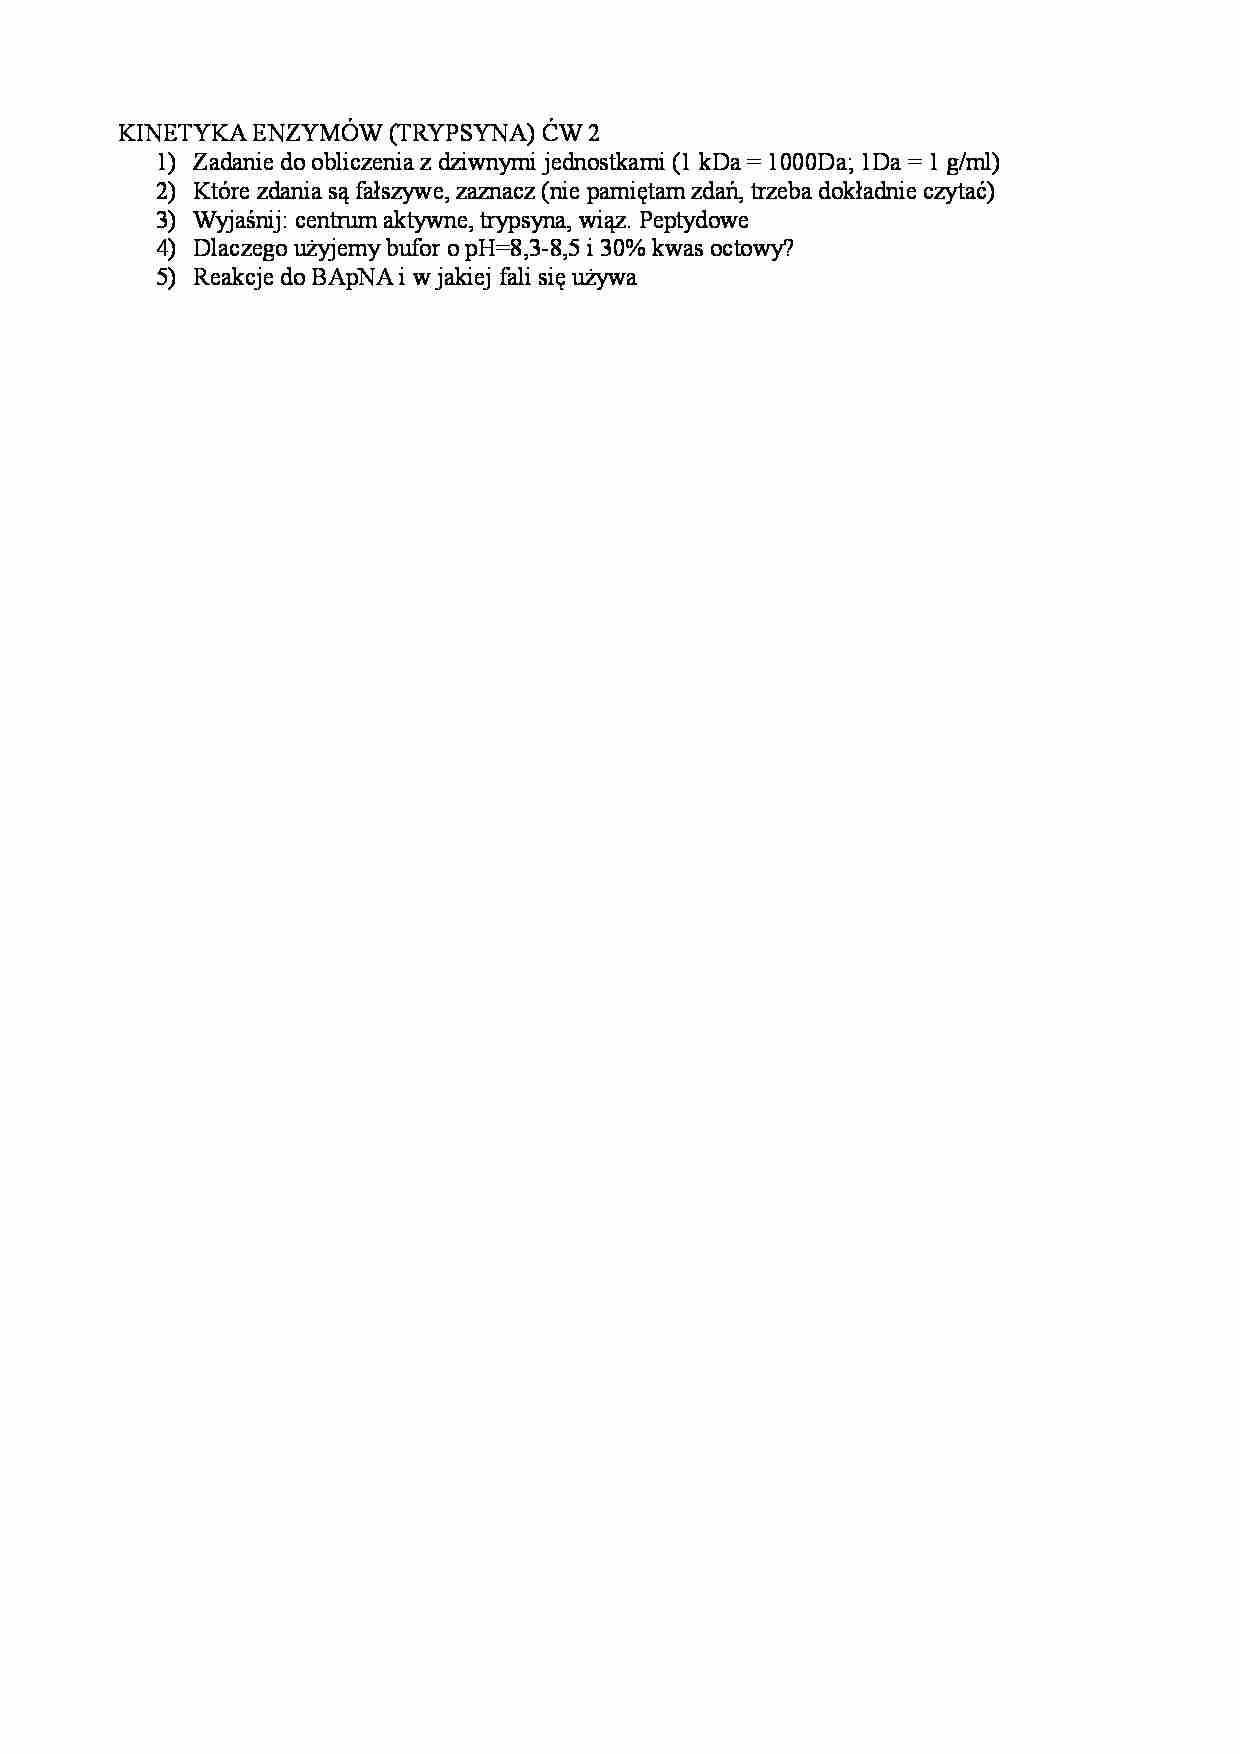 Wejściówka-kinetyka enzymów-trypsyna - strona 1